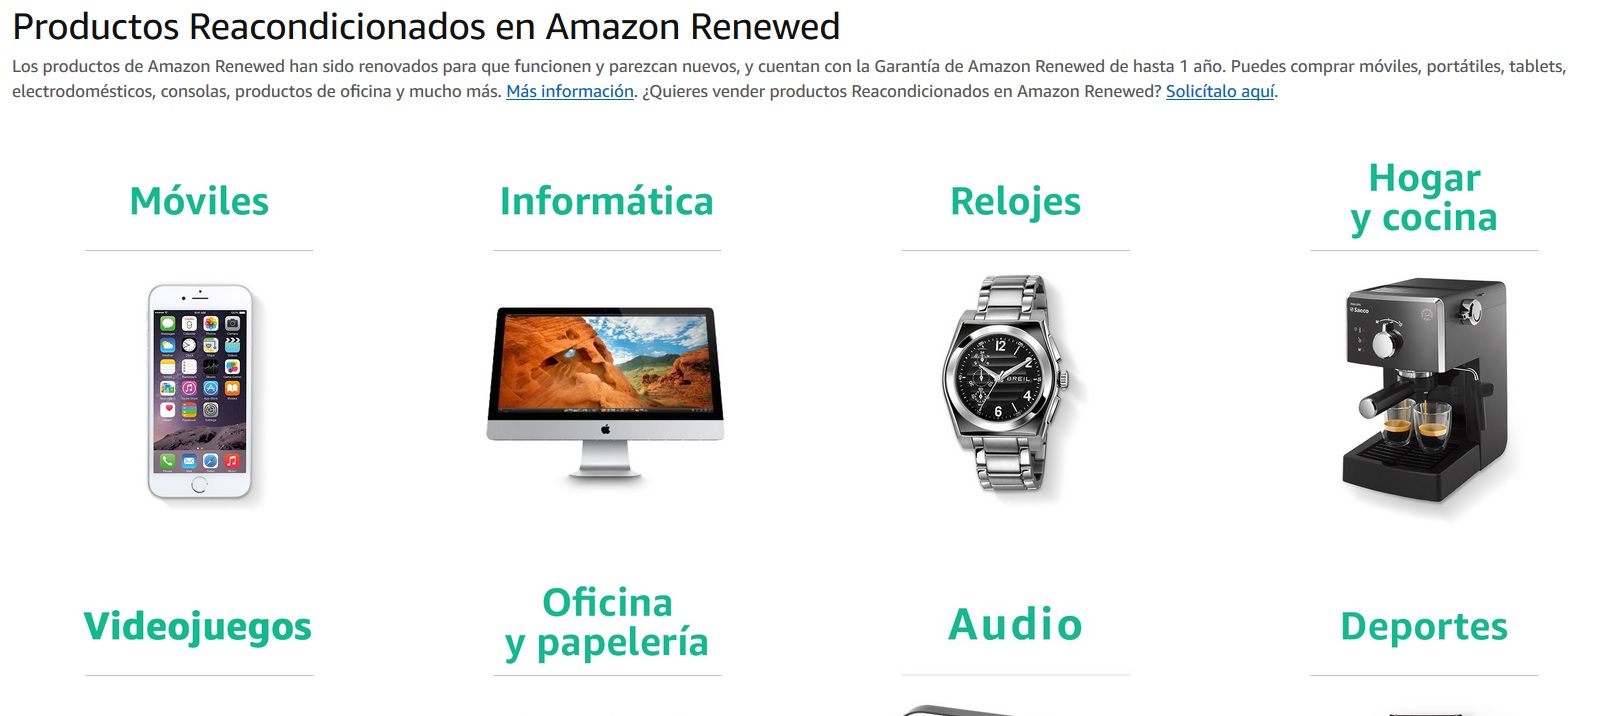 Como es la garantia de los productos reacondicionados de Amazon 7